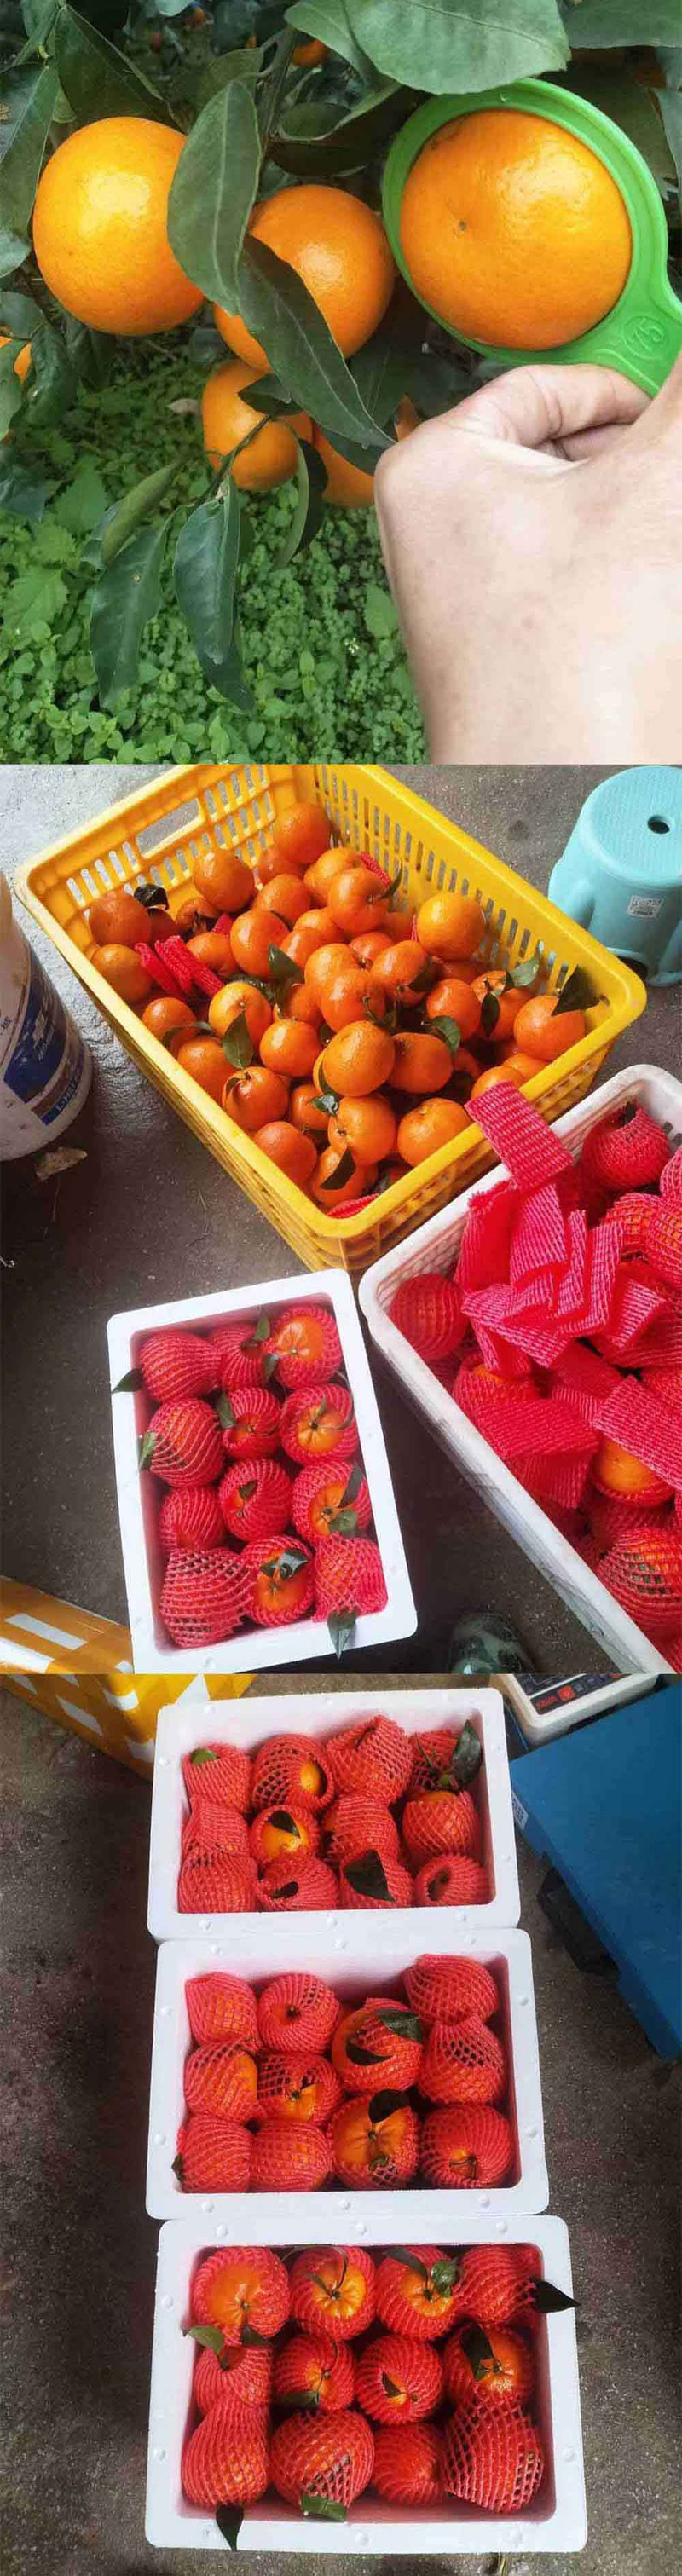  洛阳农品 农家自产 武鸣沃柑5kg （精品中大果）果园现摘新鲜水果